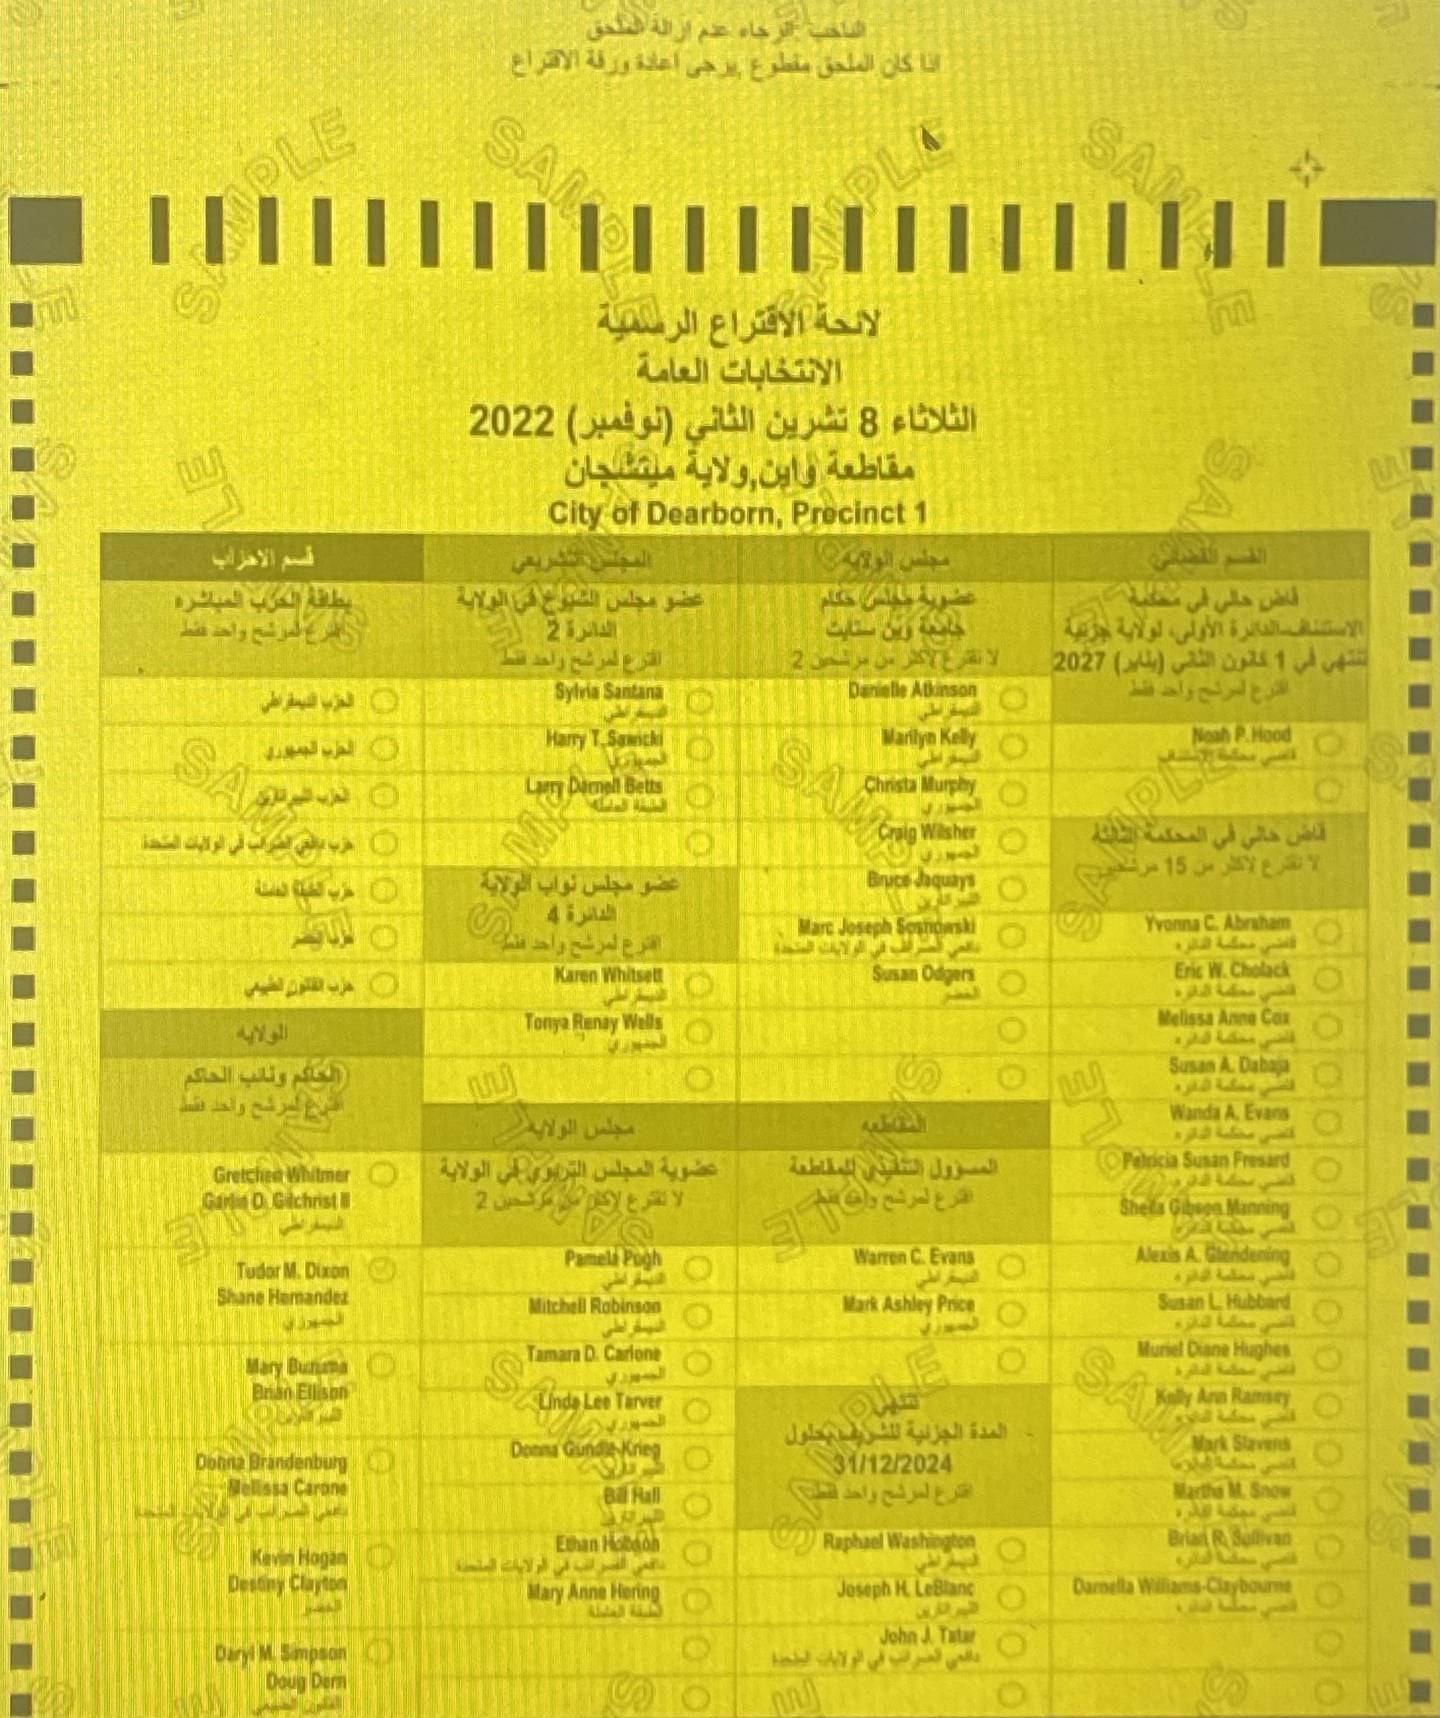 Coupe partielle d'un échantillon de bulletin de vote en langue arabe de la ville de Dearborn.  Photo: cityofdearborn.org